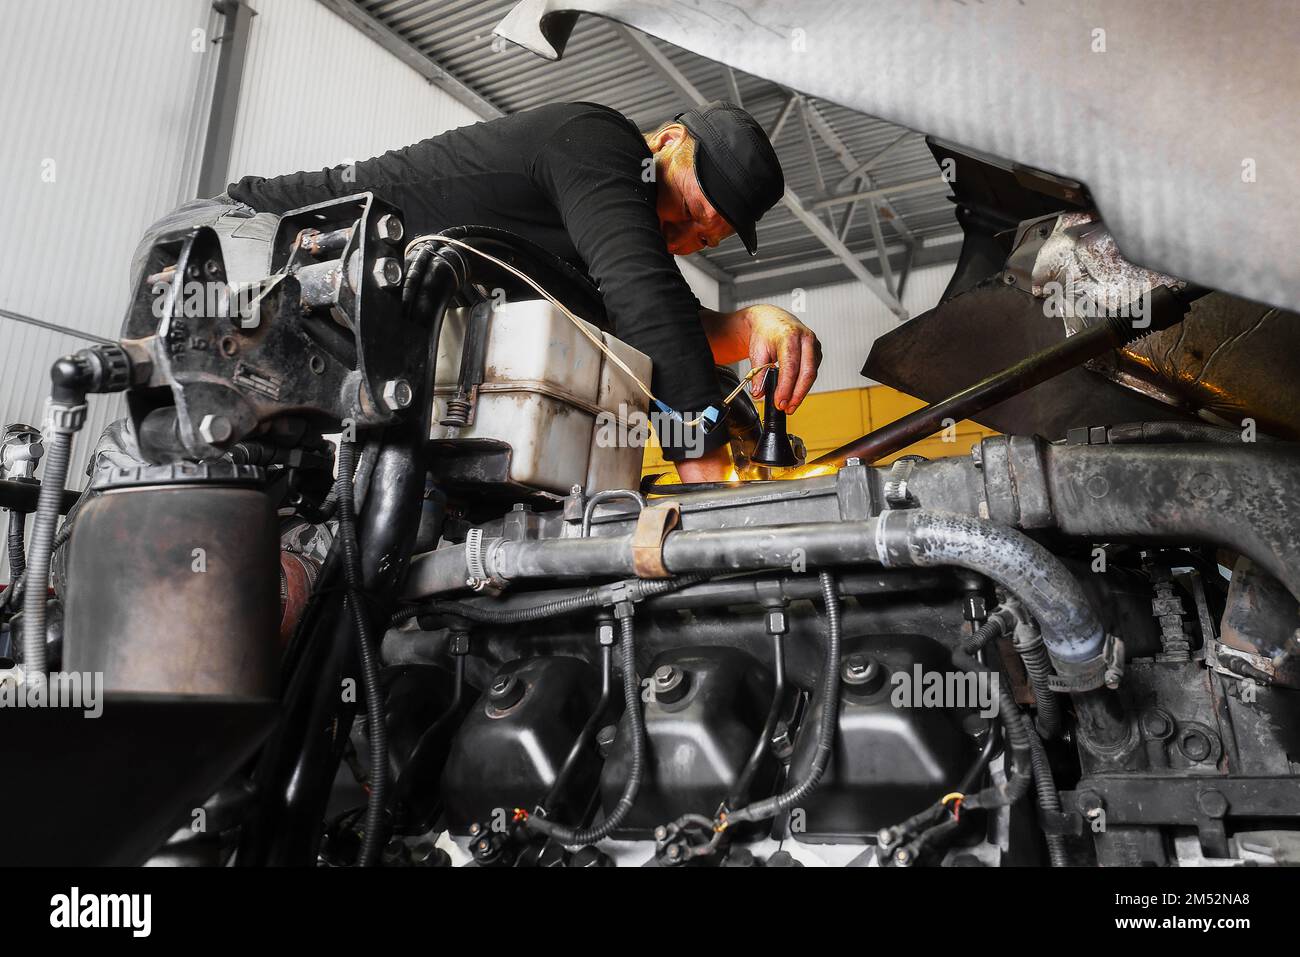 Automechaniker repariert großen Lkw oder Traktor in der Werkstatt. Professioneller Mechaniker repariert Lkw-Motor. Aufrichtiger Arbeiter. Stockfoto